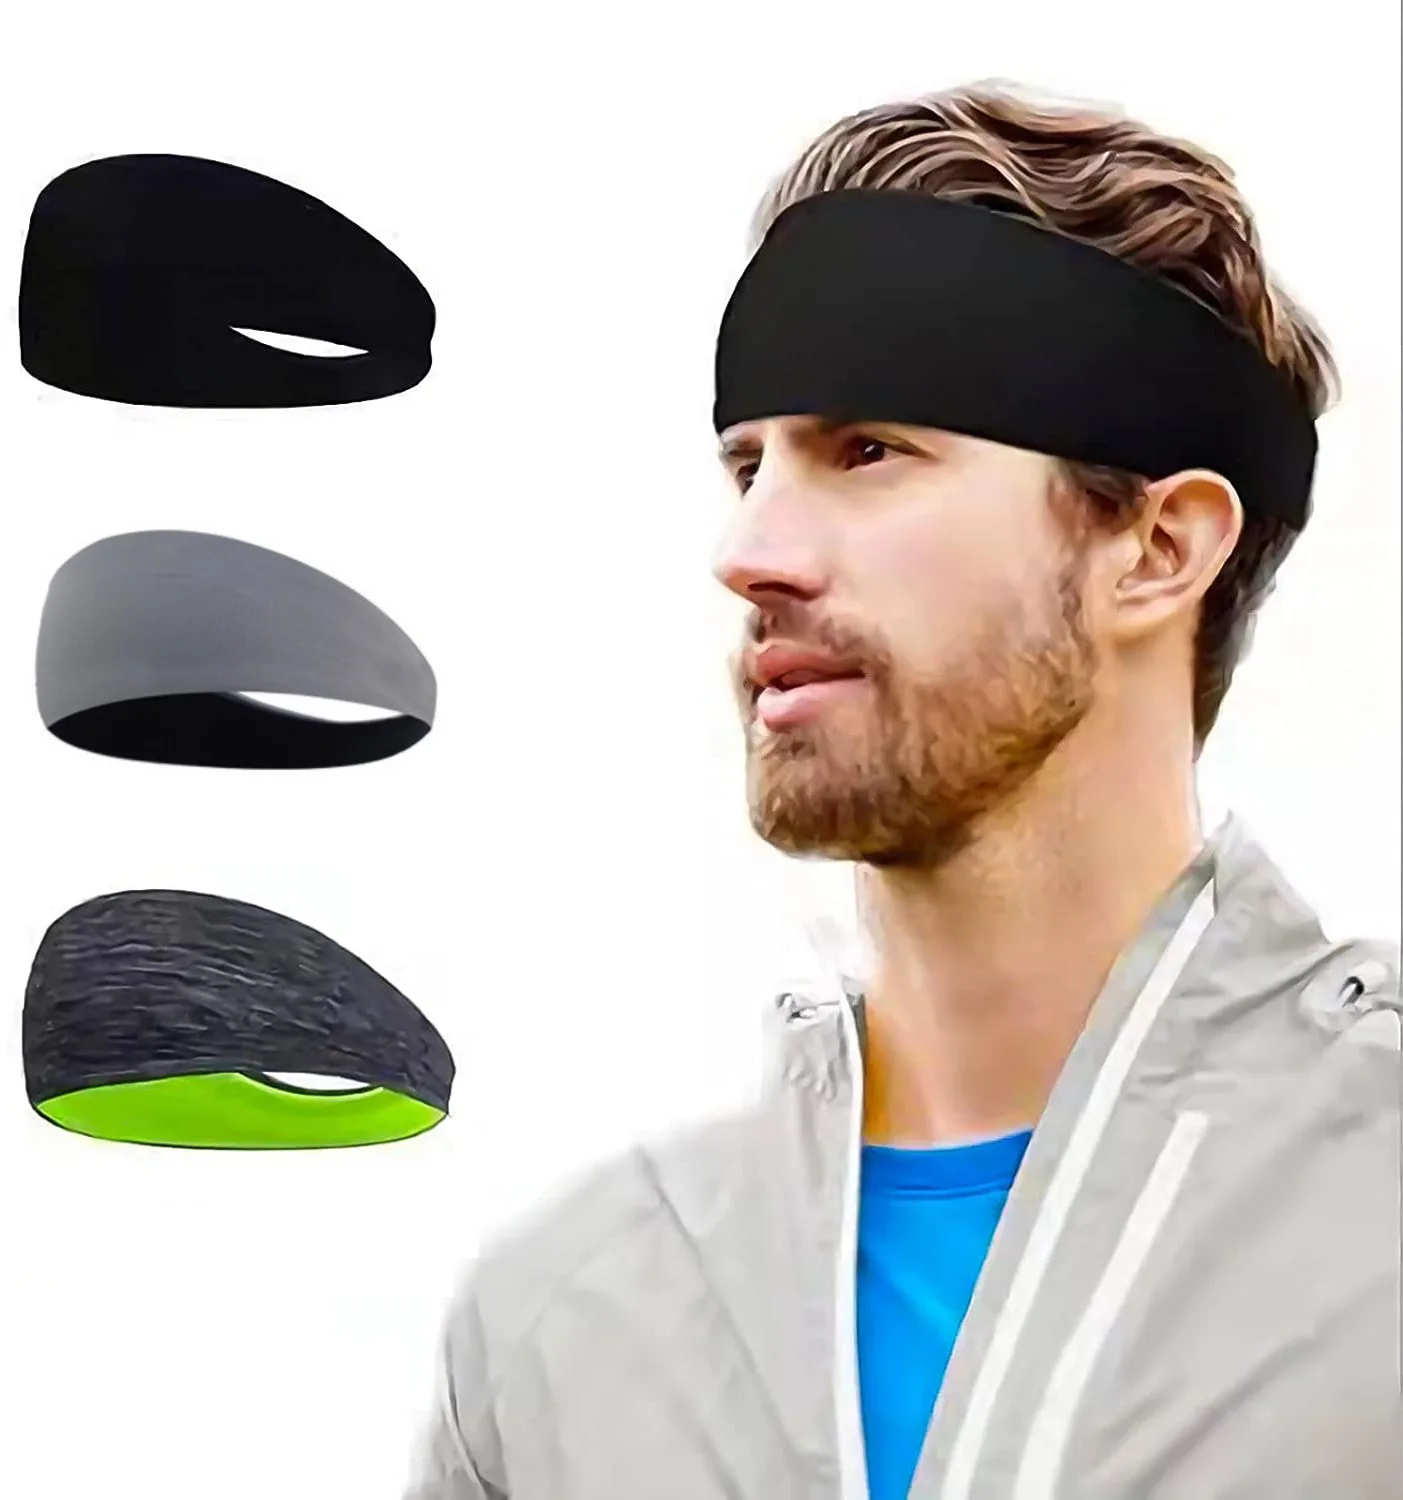 

Повязка на голову для мужчин и женщин, эластичная повязка на голову для йоги, бега, занятий спортом на открытом воздухе, для фитнеса, тенниса